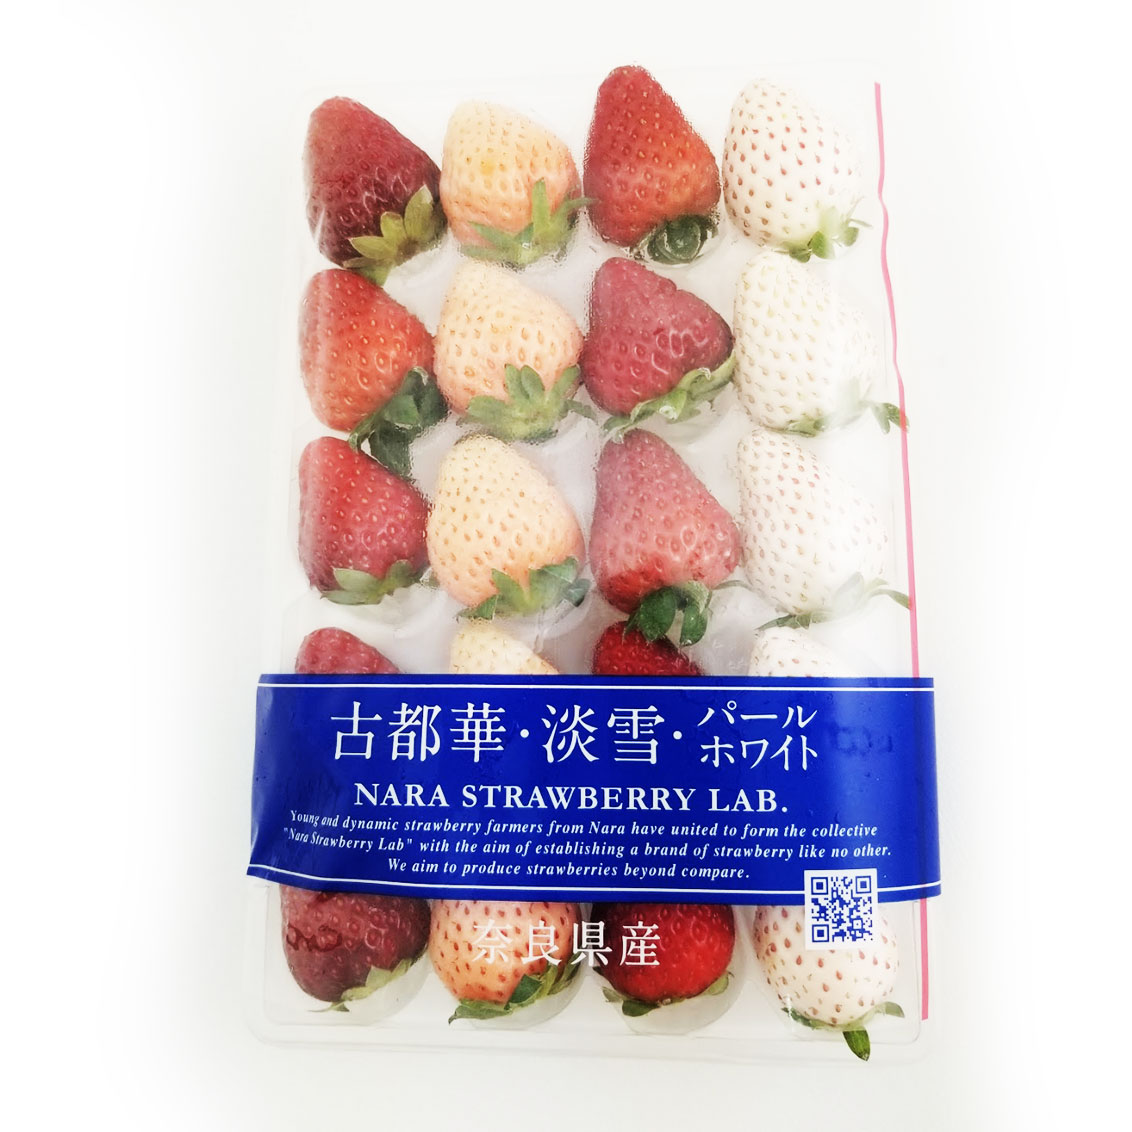 Nara 3 colors - Strawberry 360g - Japan*